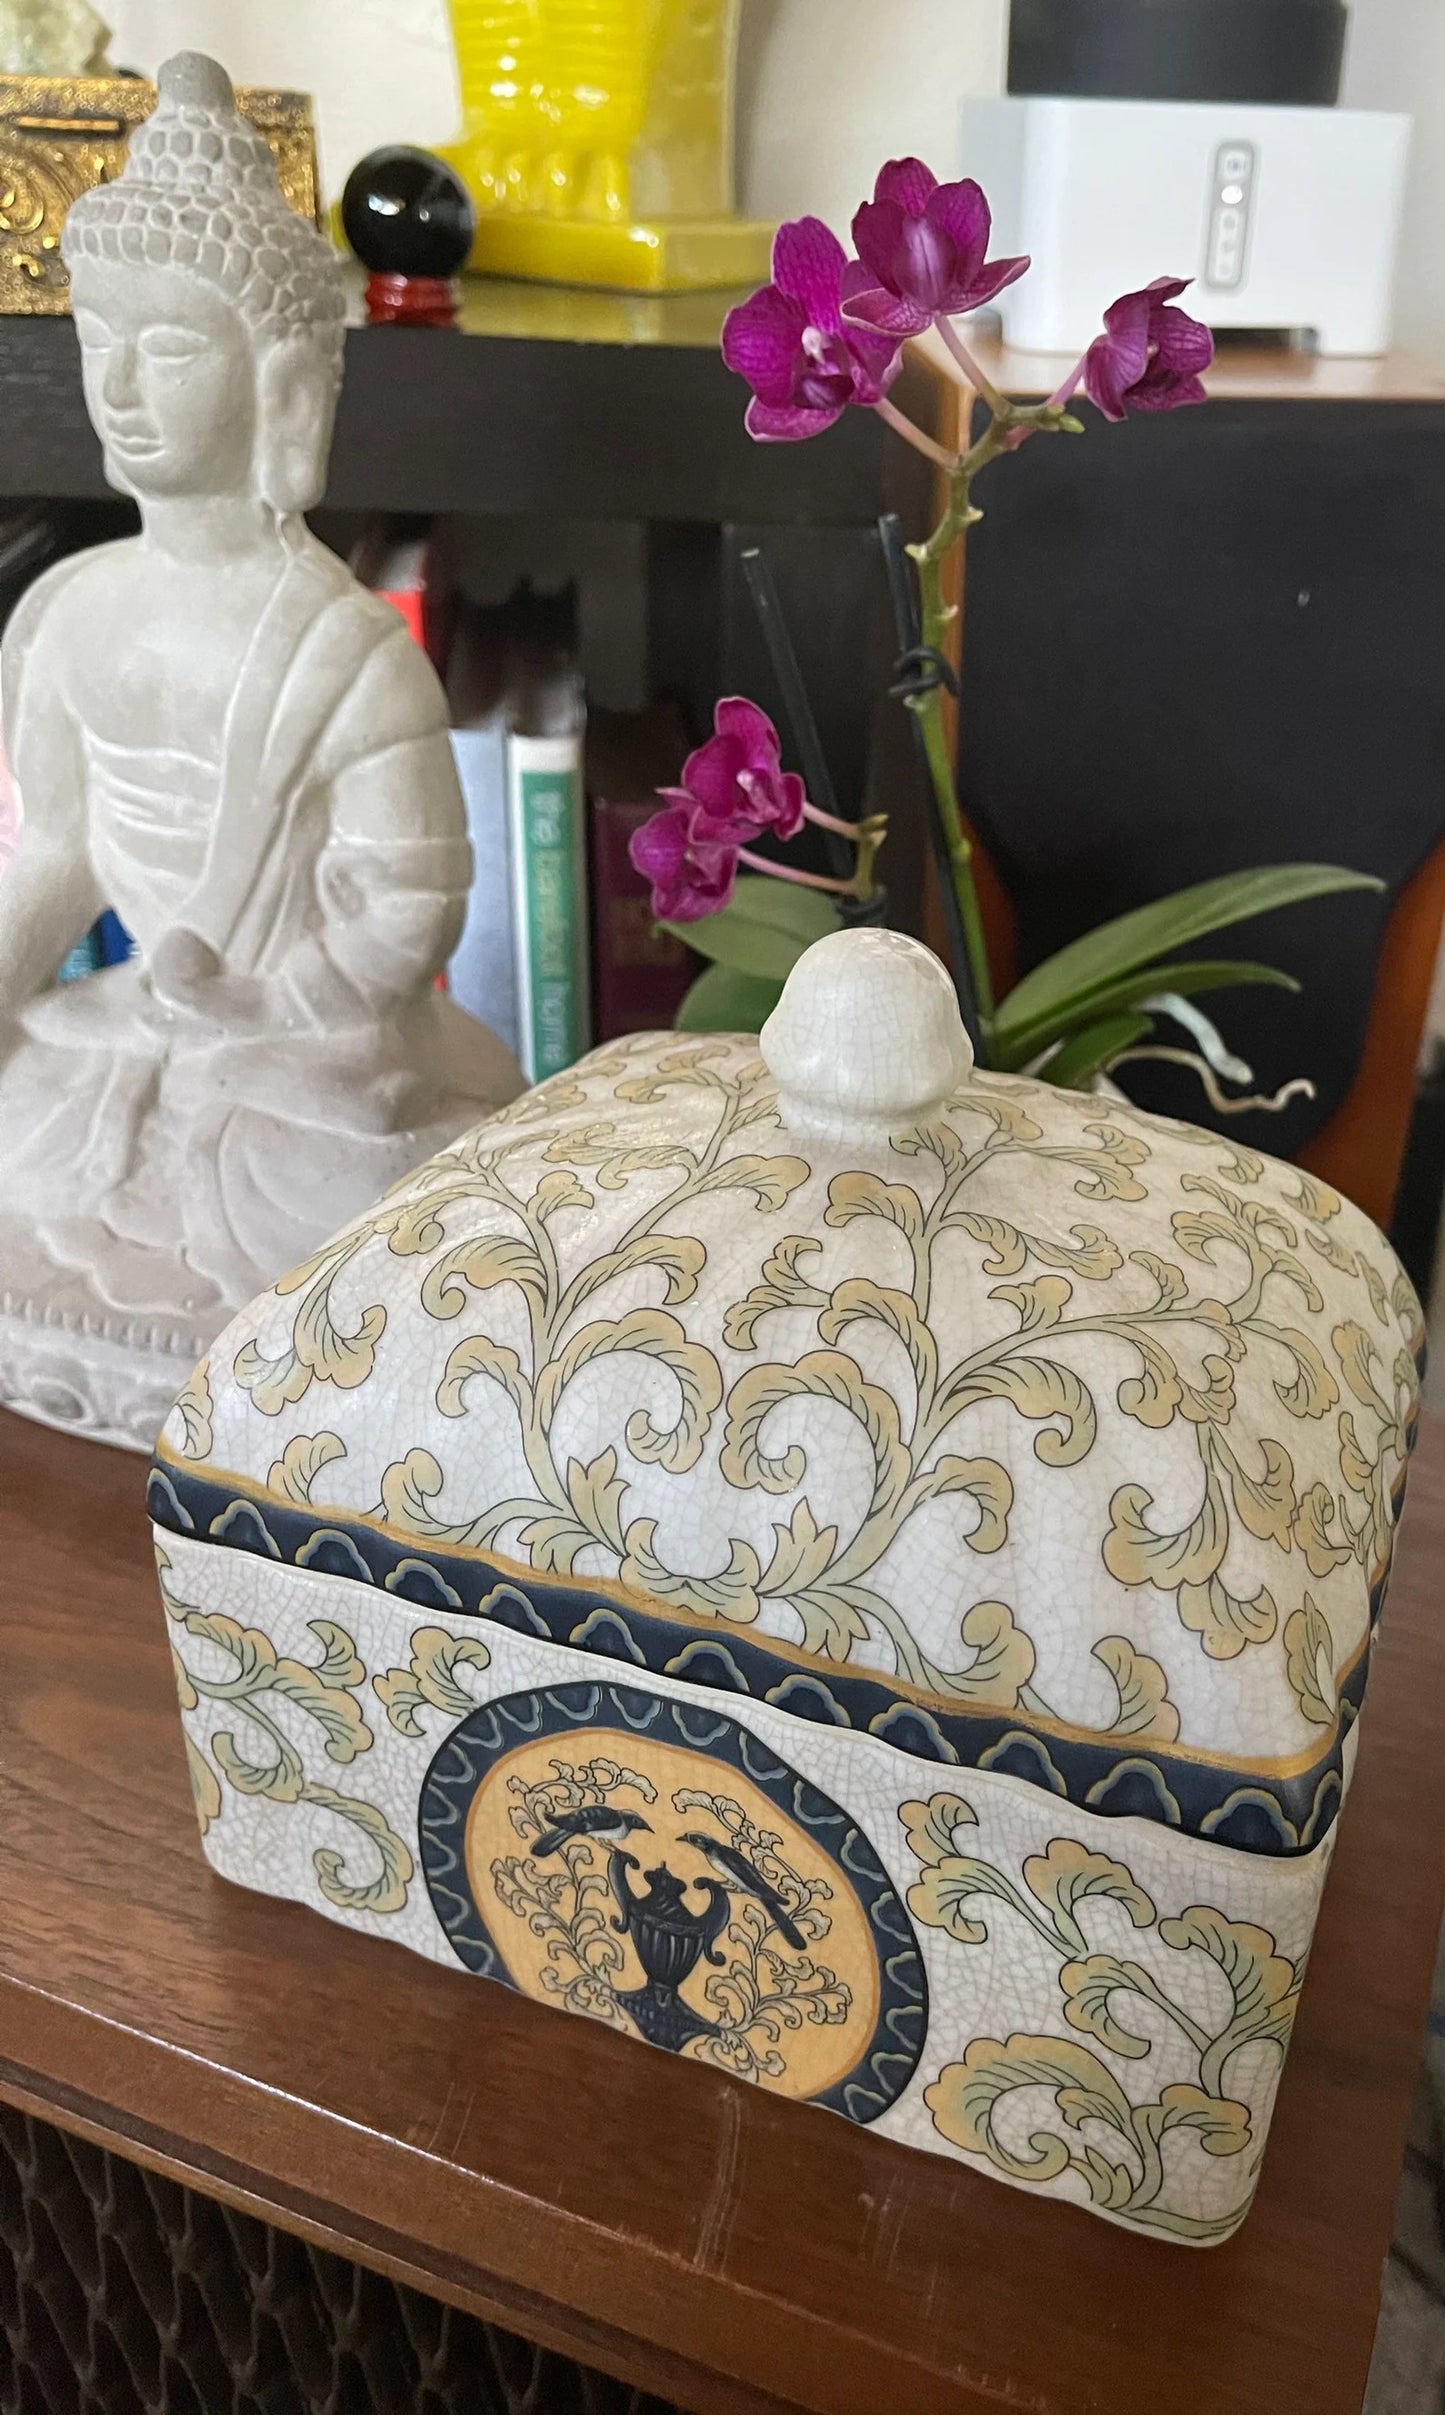 Old World Vintage Ceramic Box, Bodhi Vintage